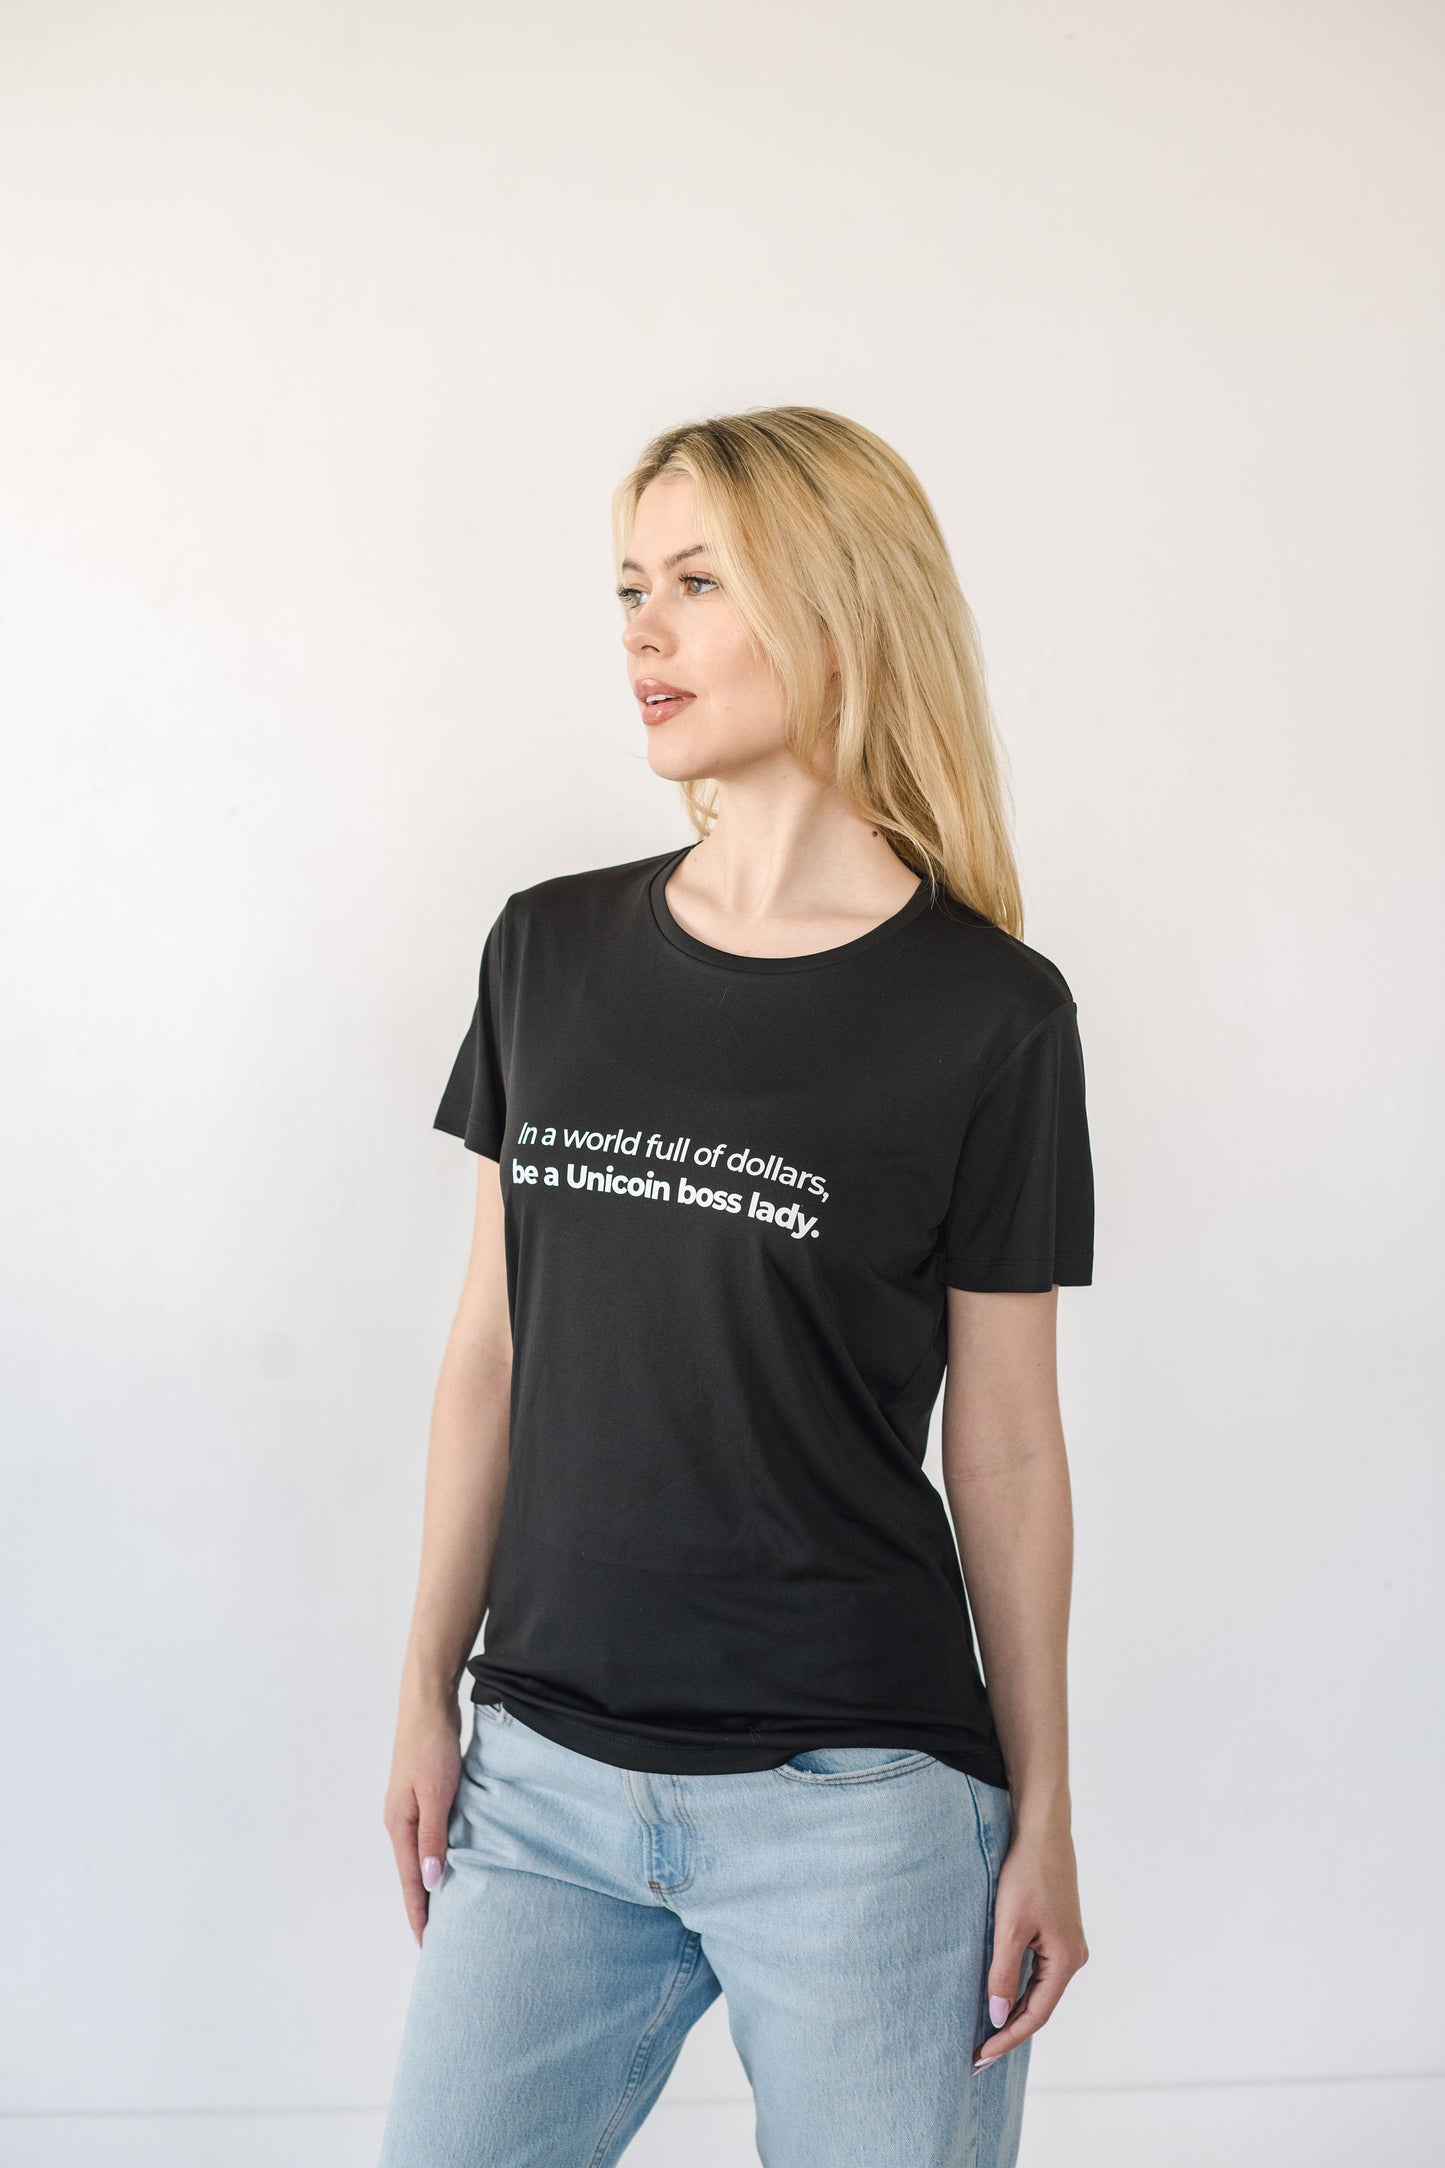 Unicoin Boss Lady T-shirt